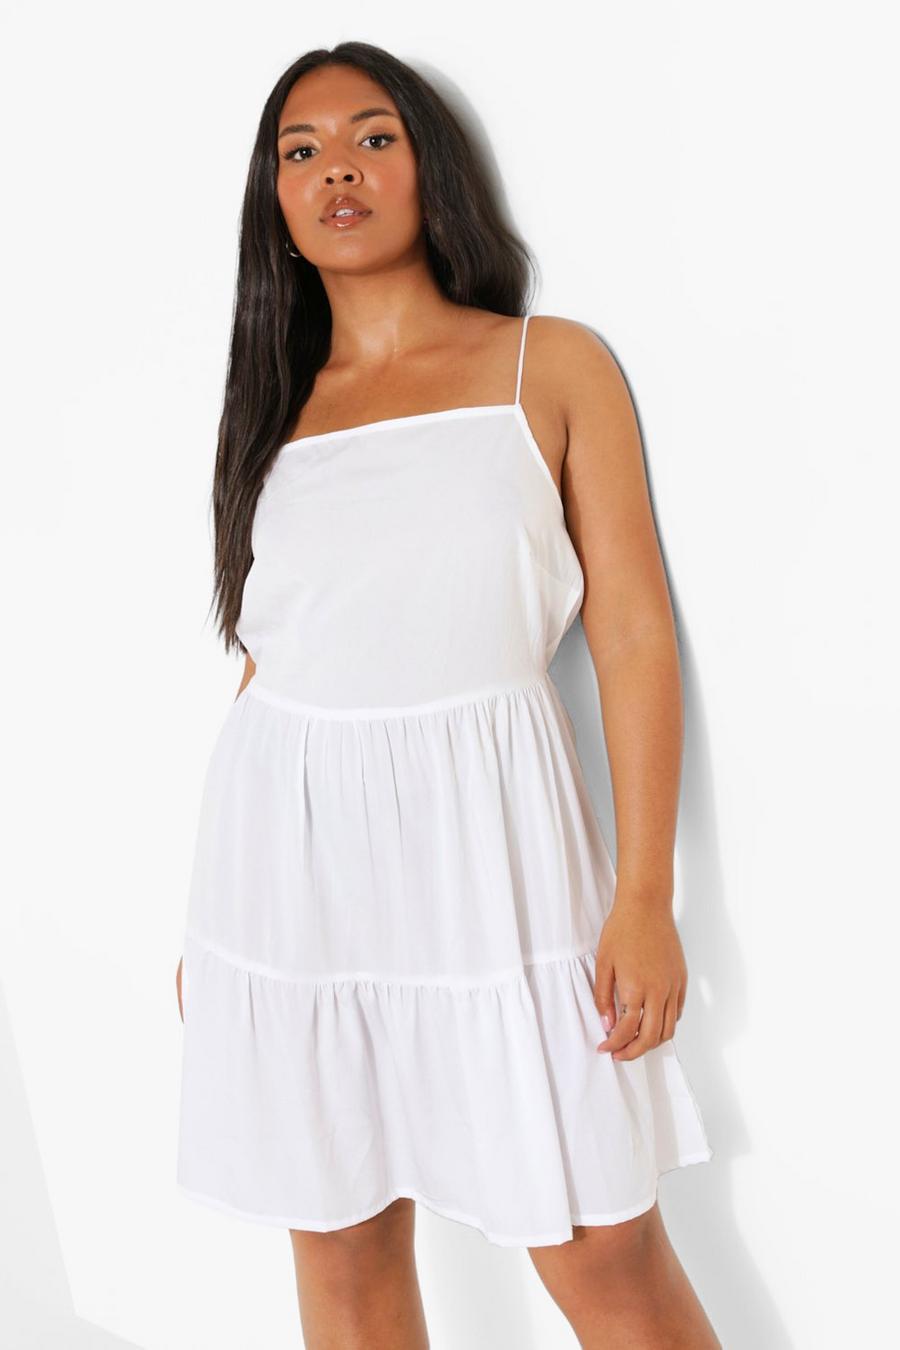 לבן blanco שמלת סמוק מדורגת עם כתפיות דקות, מידות גדולות